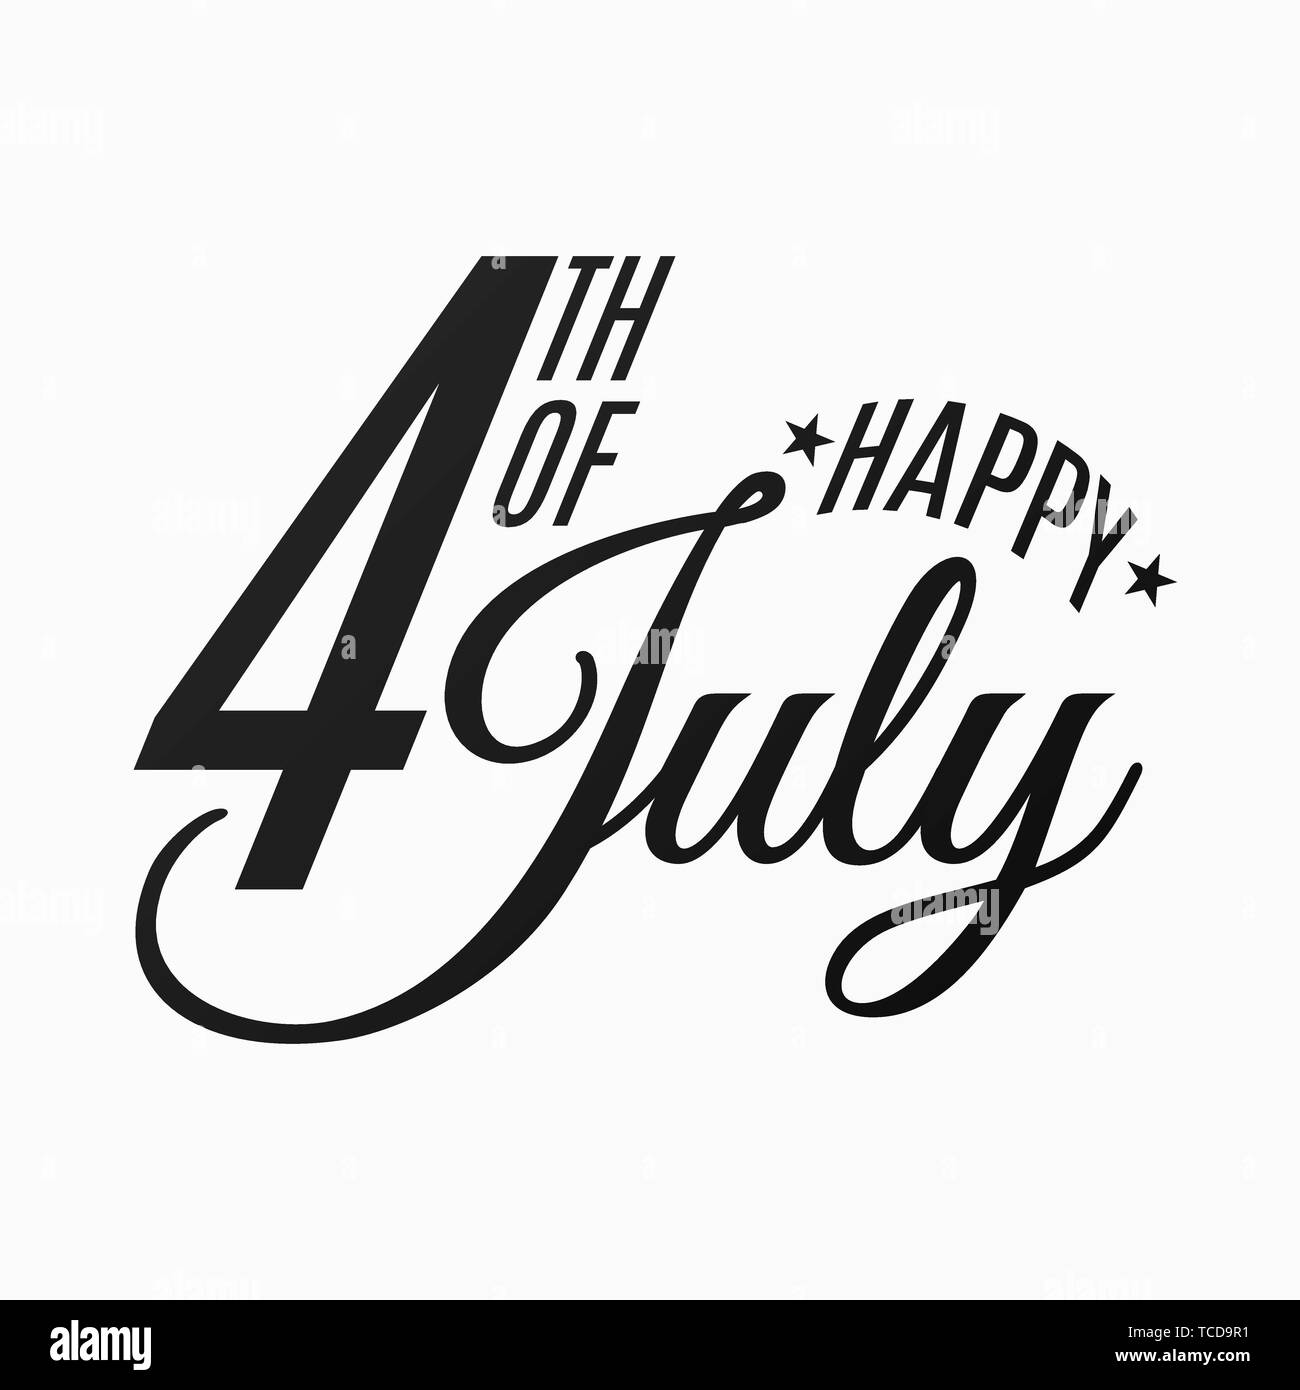 Happy Independence Day. Festliche flach und schwarzer Text auf einem weißen Hintergrund. Juli 4. Die Vereinigten Staaten von Amerika. Vector Illustration EPS 10. Stock Vektor